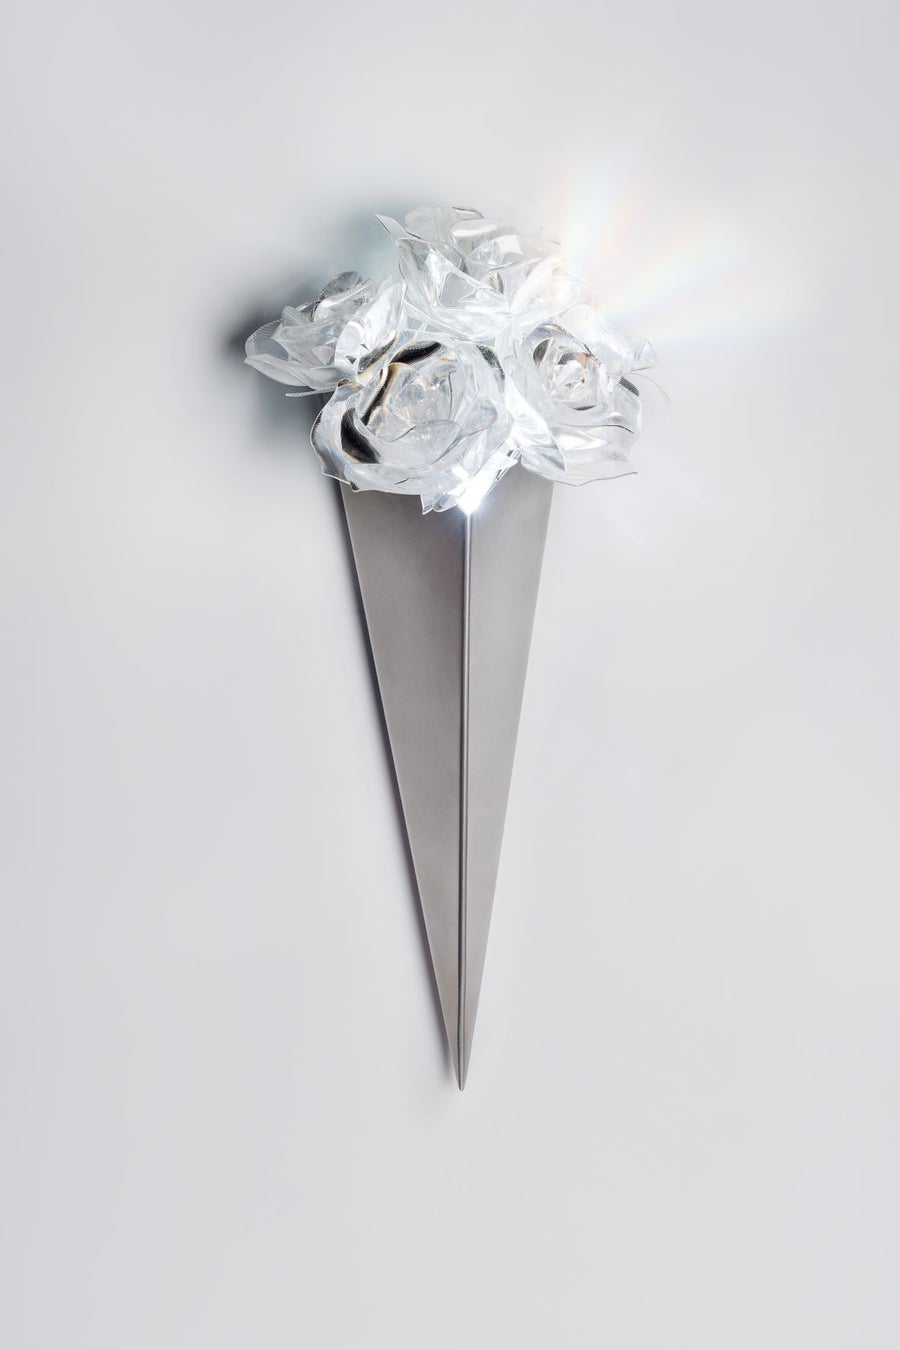 世界的にも希少な“クオーツガラス”使用の大型作品を初公開！『Takahiro Matsuo “Light Crystallized”』展開催のサブ画像3_図 2 アートプロダクト《Prism Bouquet Light》